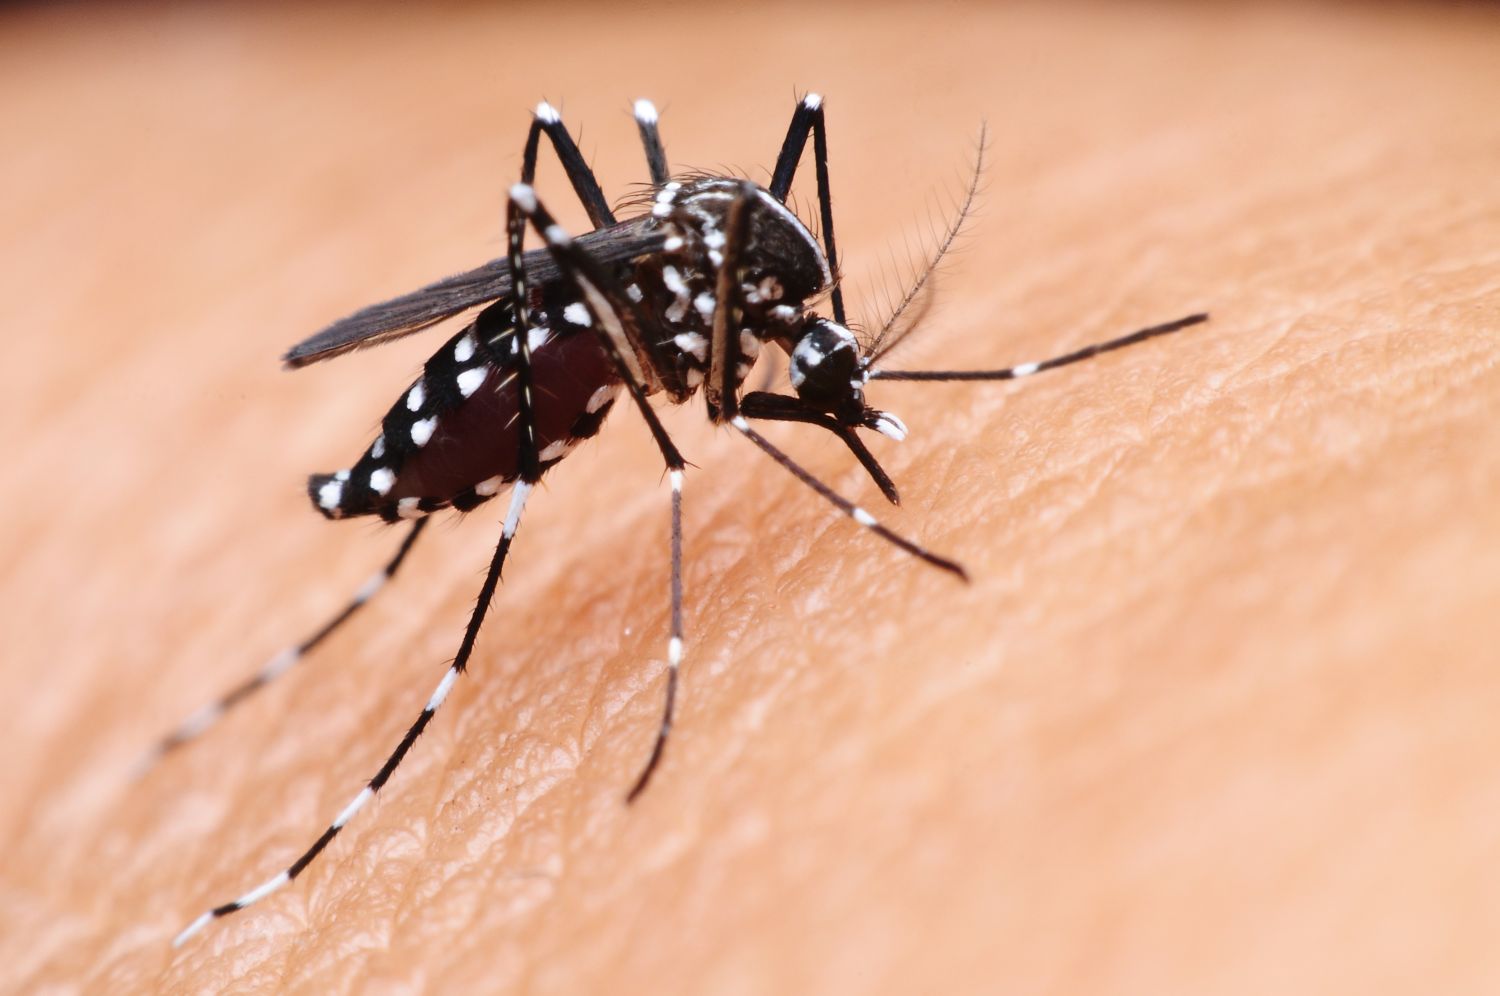 Adulticidno tretiranje komaraca na području grada Šibenika 